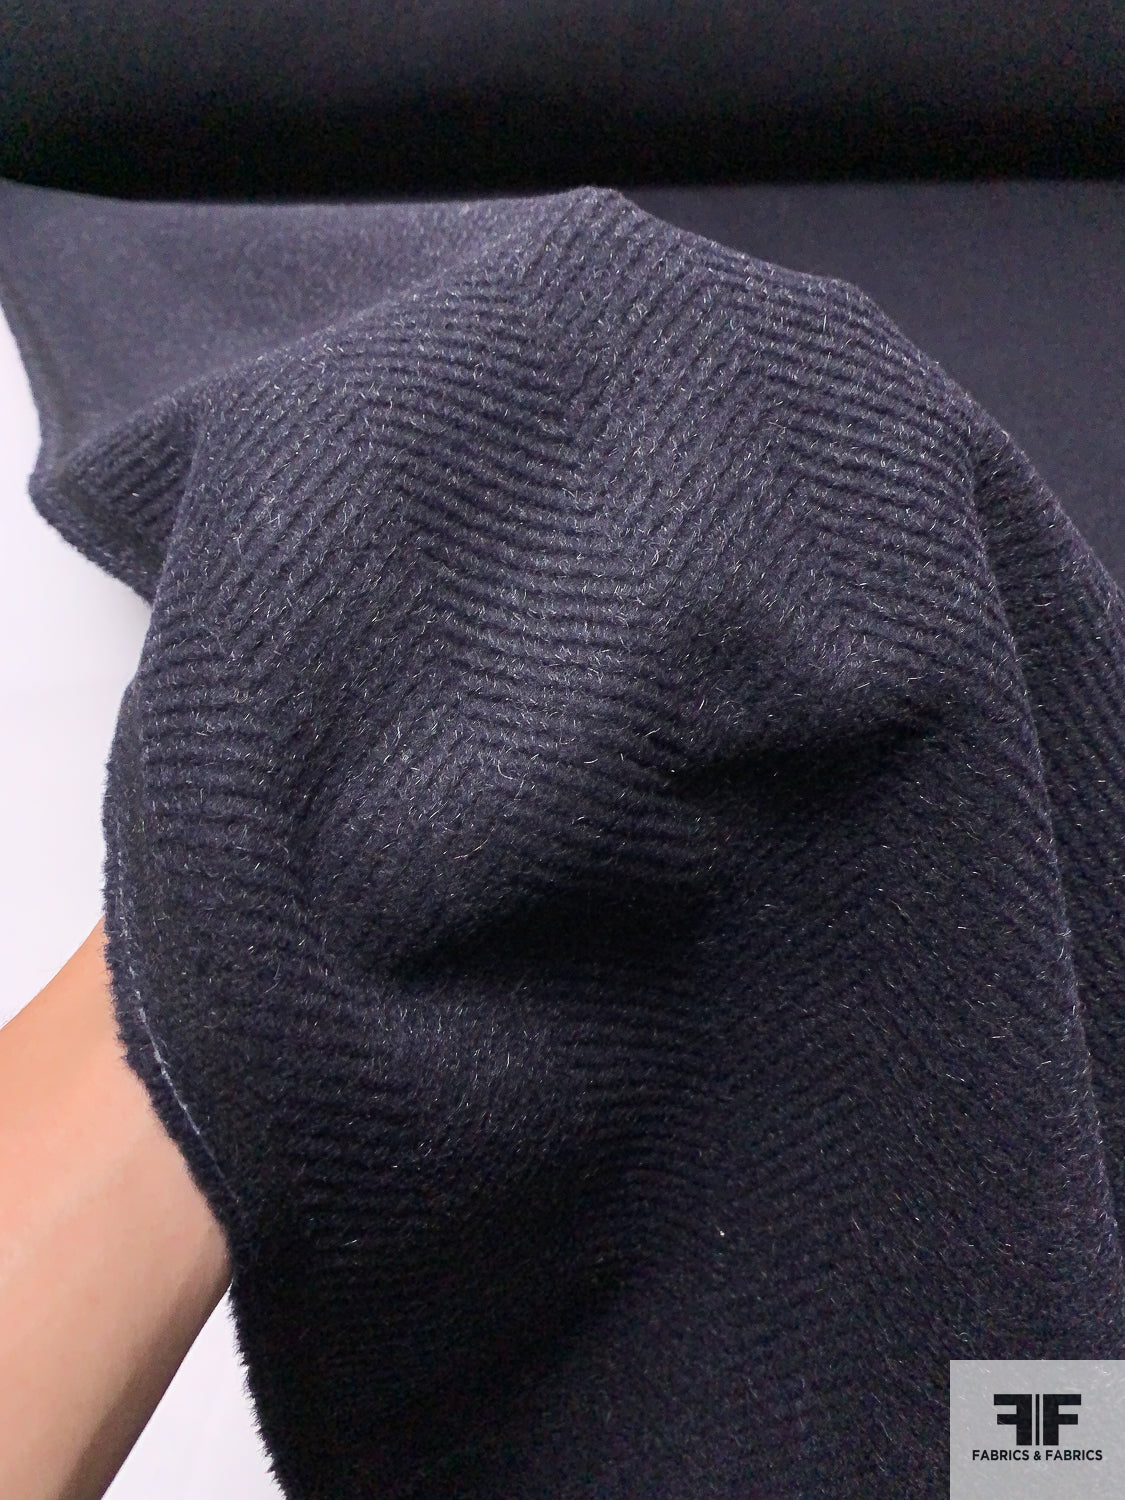 Italian Herringbone Textured and Brushed Wool Blend Coating - Black / Grey